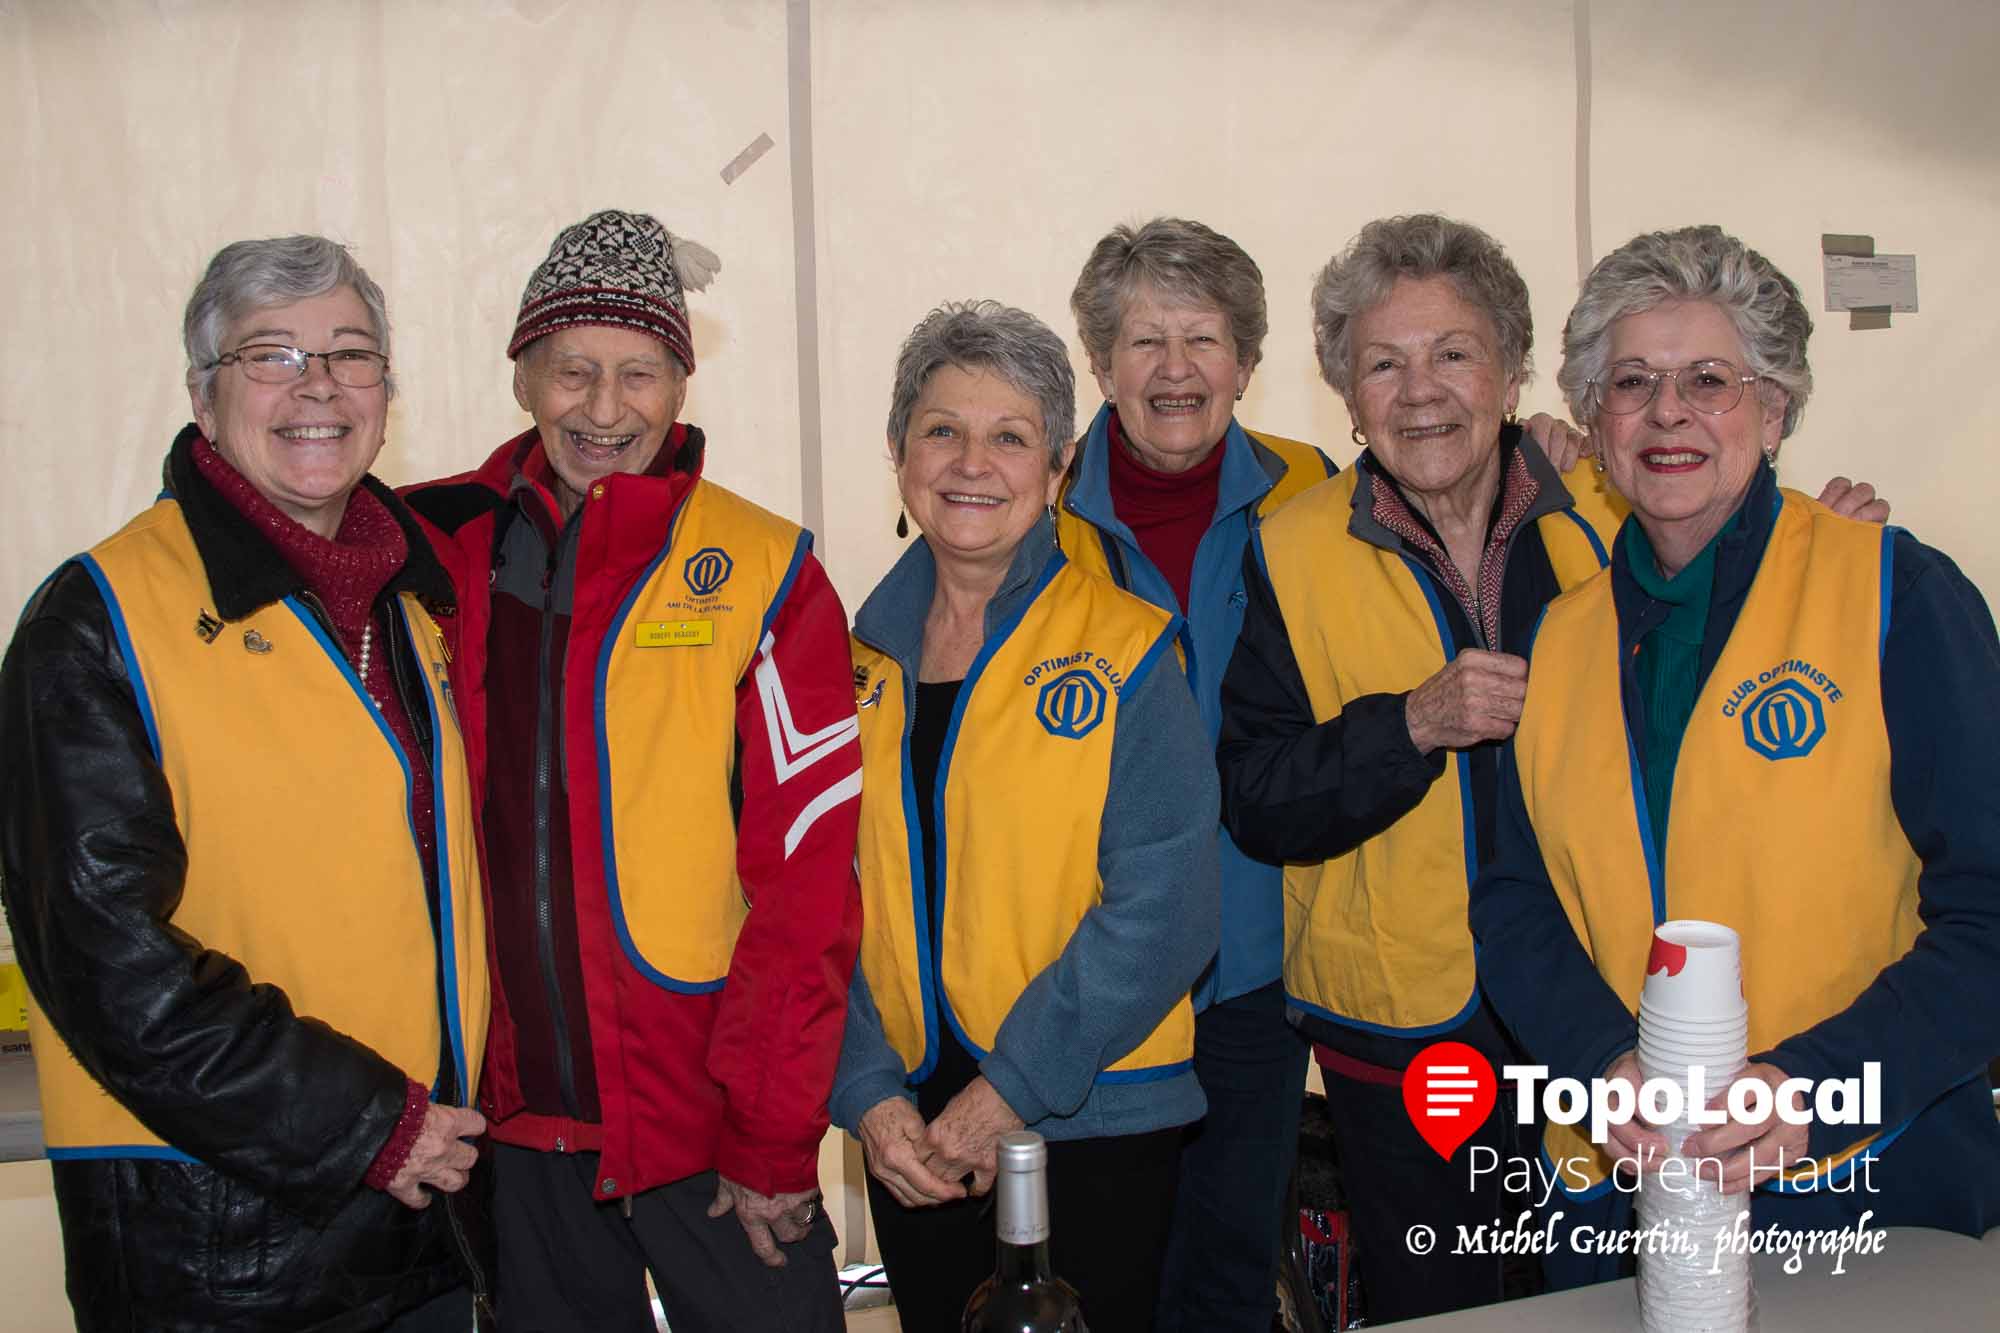 Le Club Optimiste de Saint-sauveur était présent sur place afin d'aider aux gens. Il s'agit de Francine Laliberté, Robert Beaudry, Nicole Larrivée, Andrée Bruyère, Jeannine Hamelin et Lise Lareau.